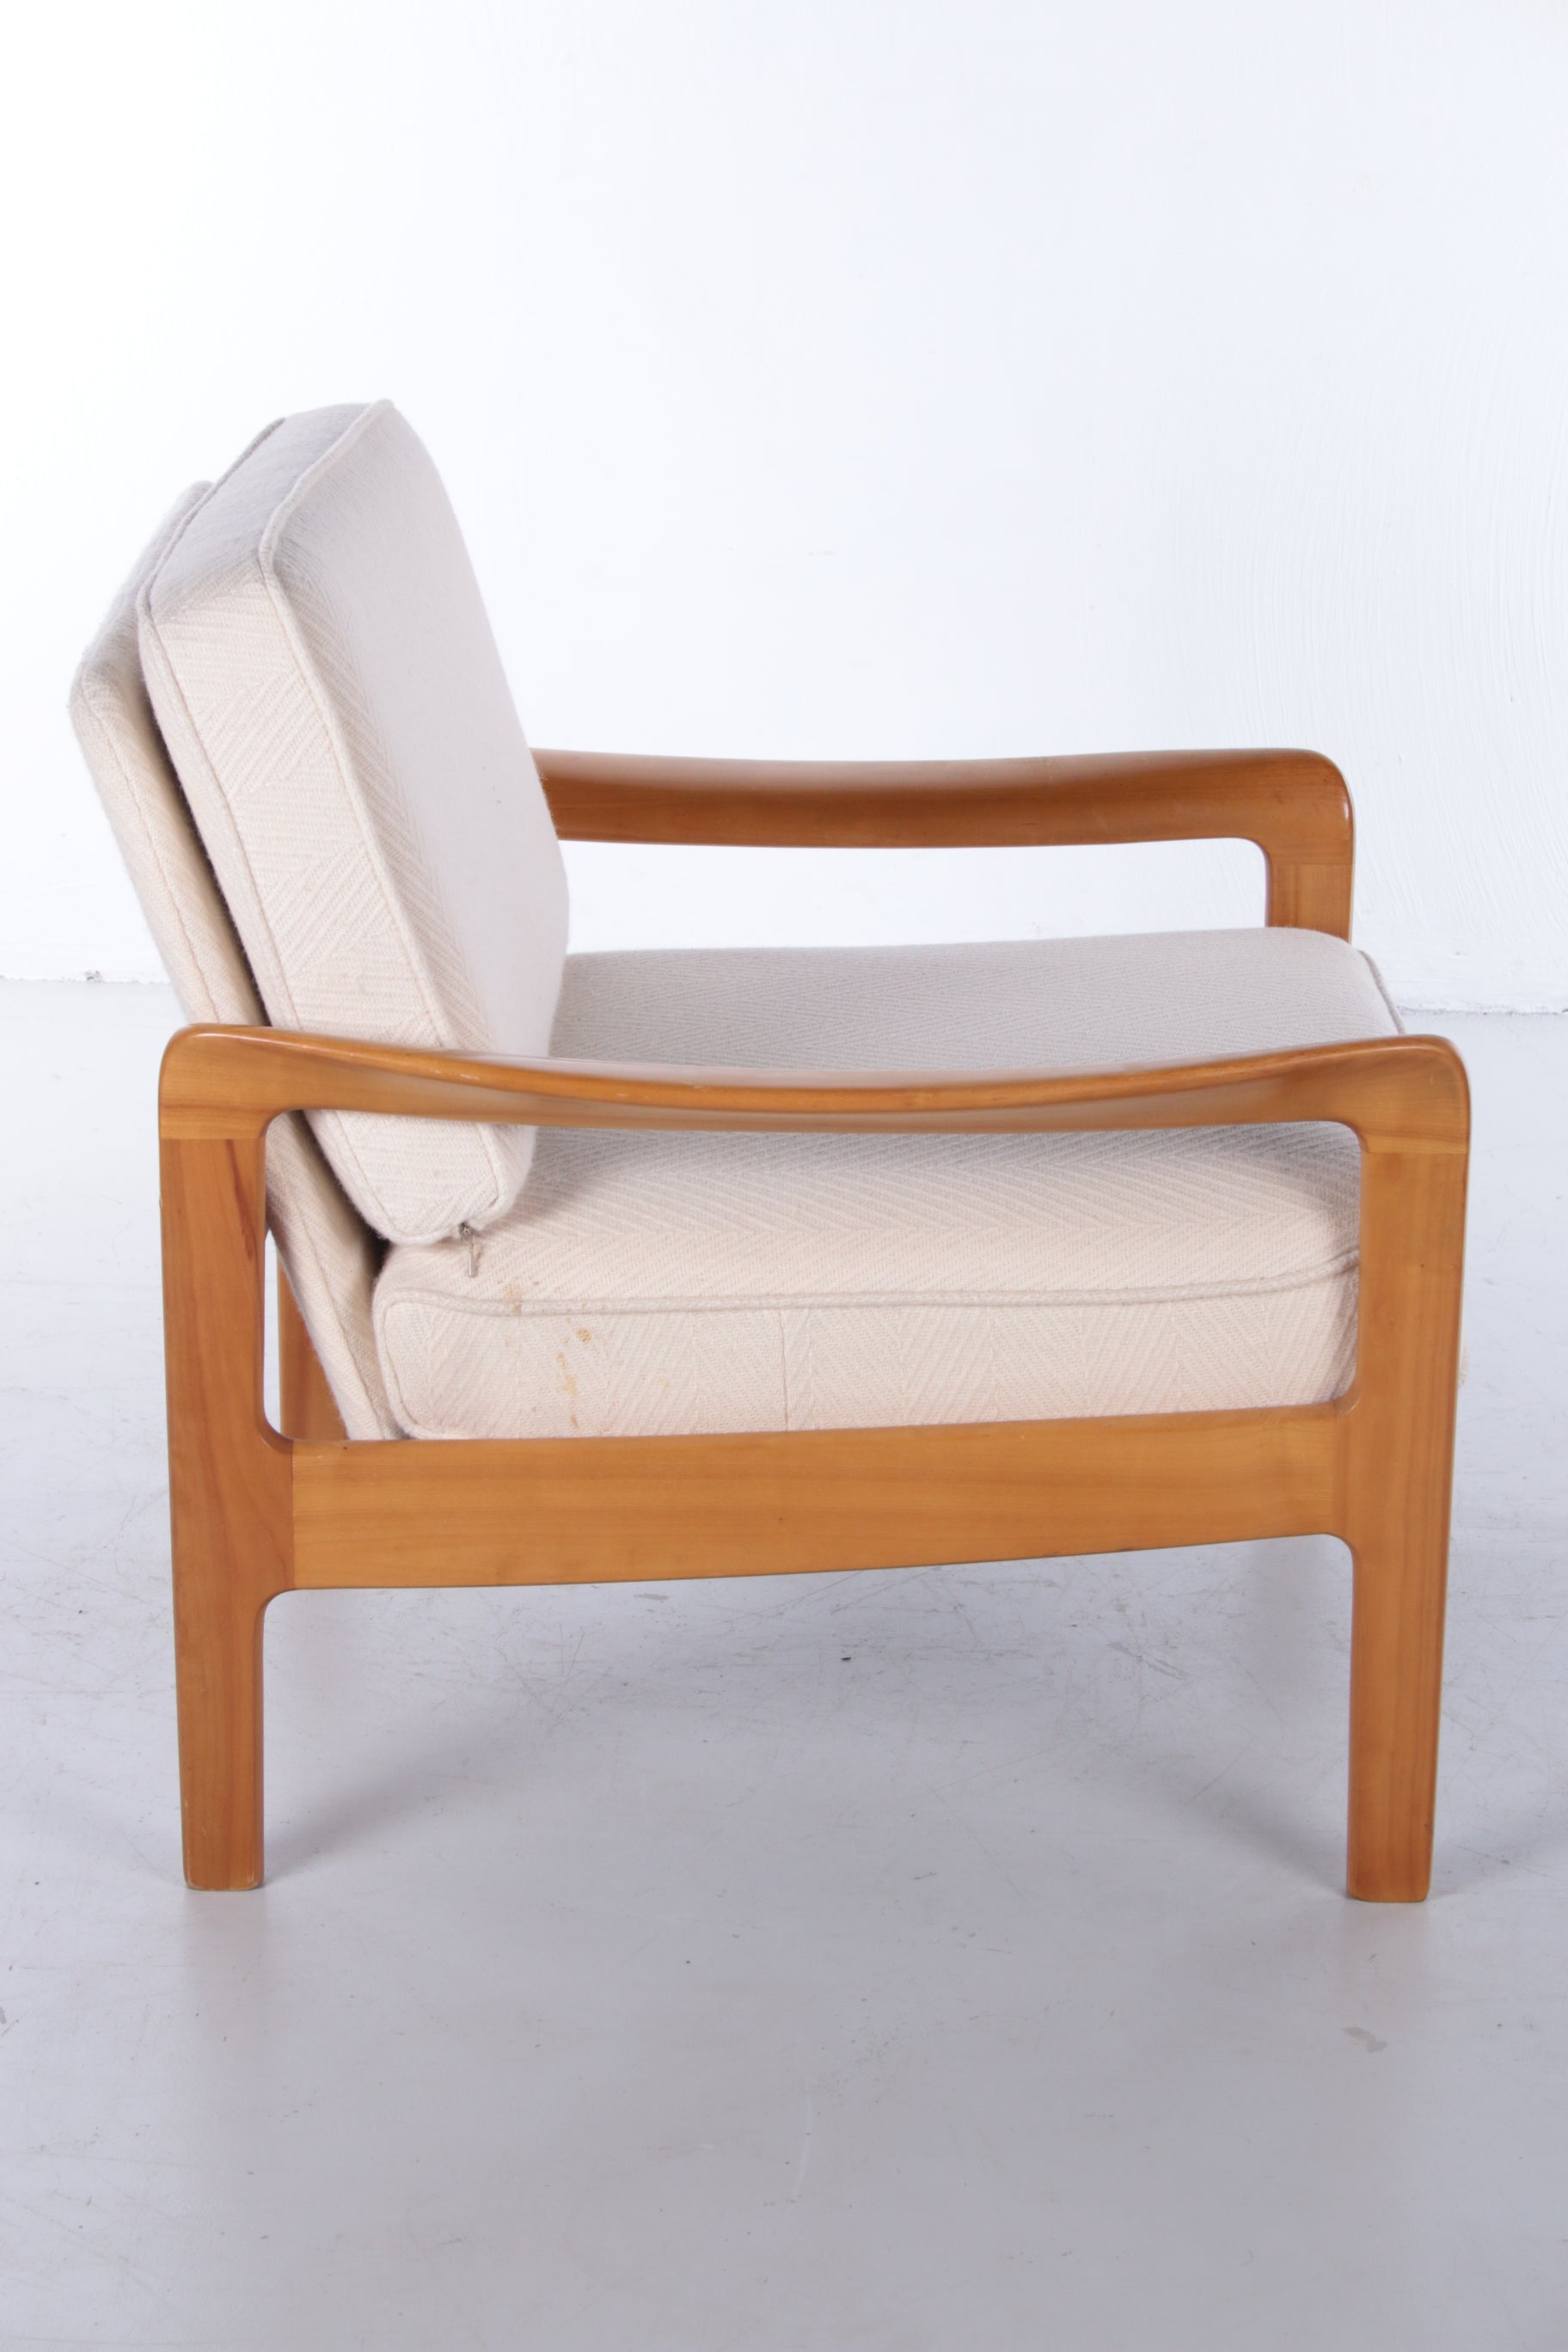 Deens Design teak fauteuil van Ole Wanscher,1960 zijkant